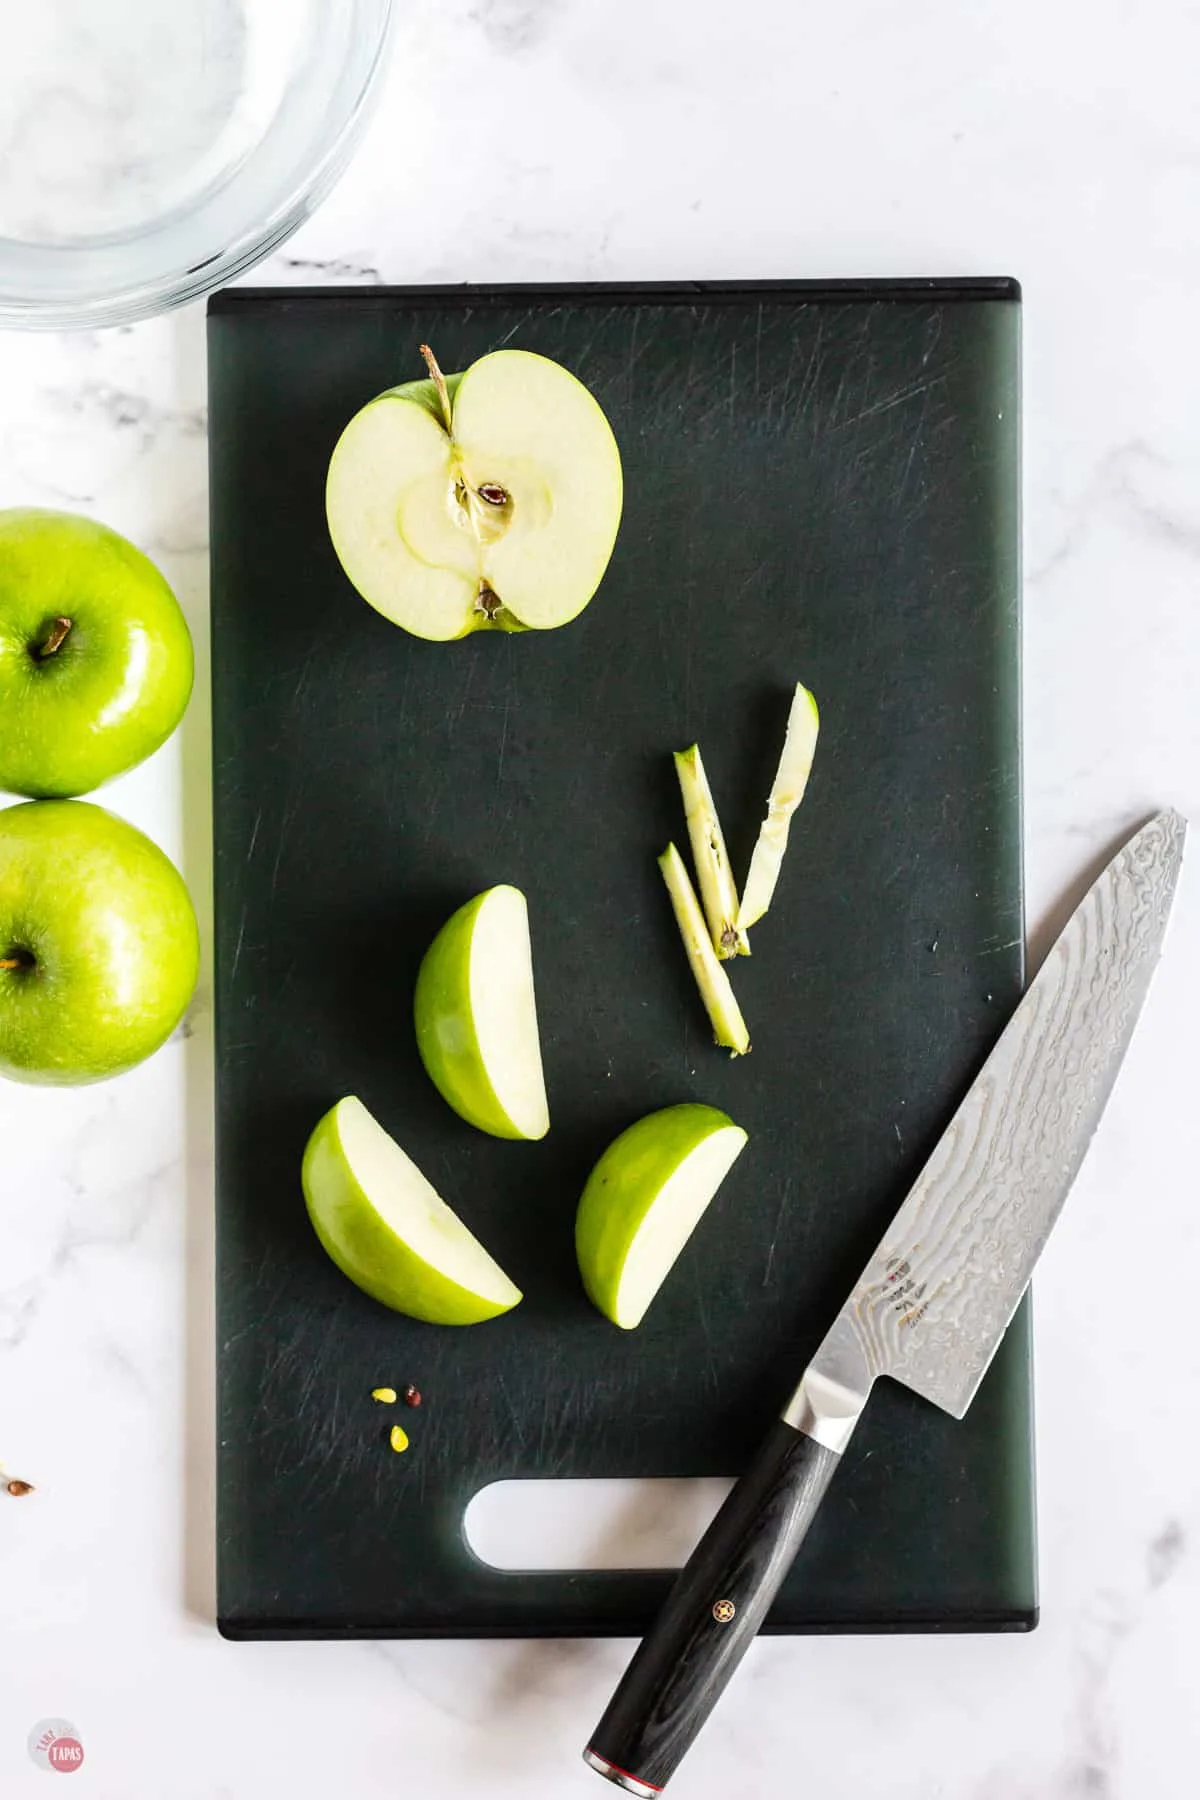 cut apples on a cutting board